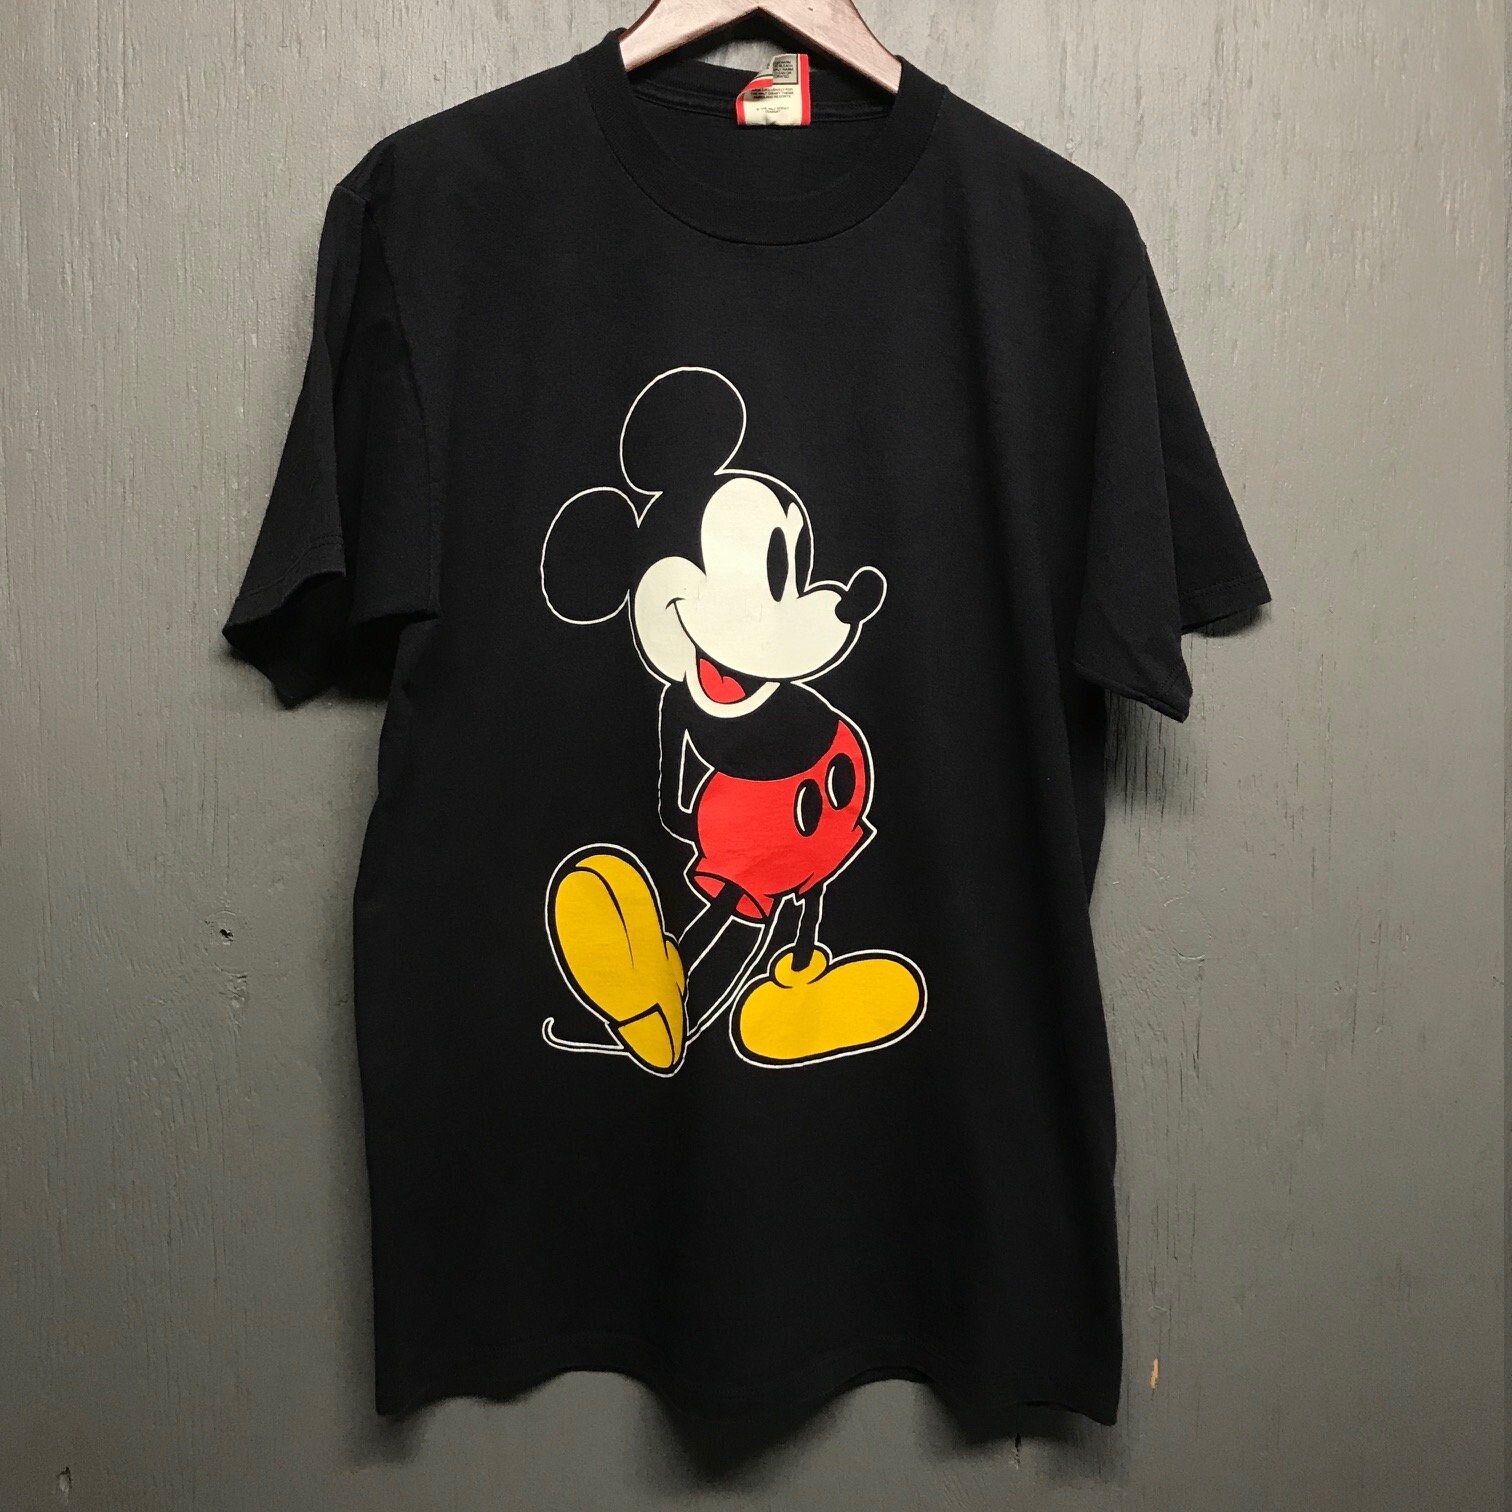 M/L vtg 90s black Mickey Mouse t shirt * medium large